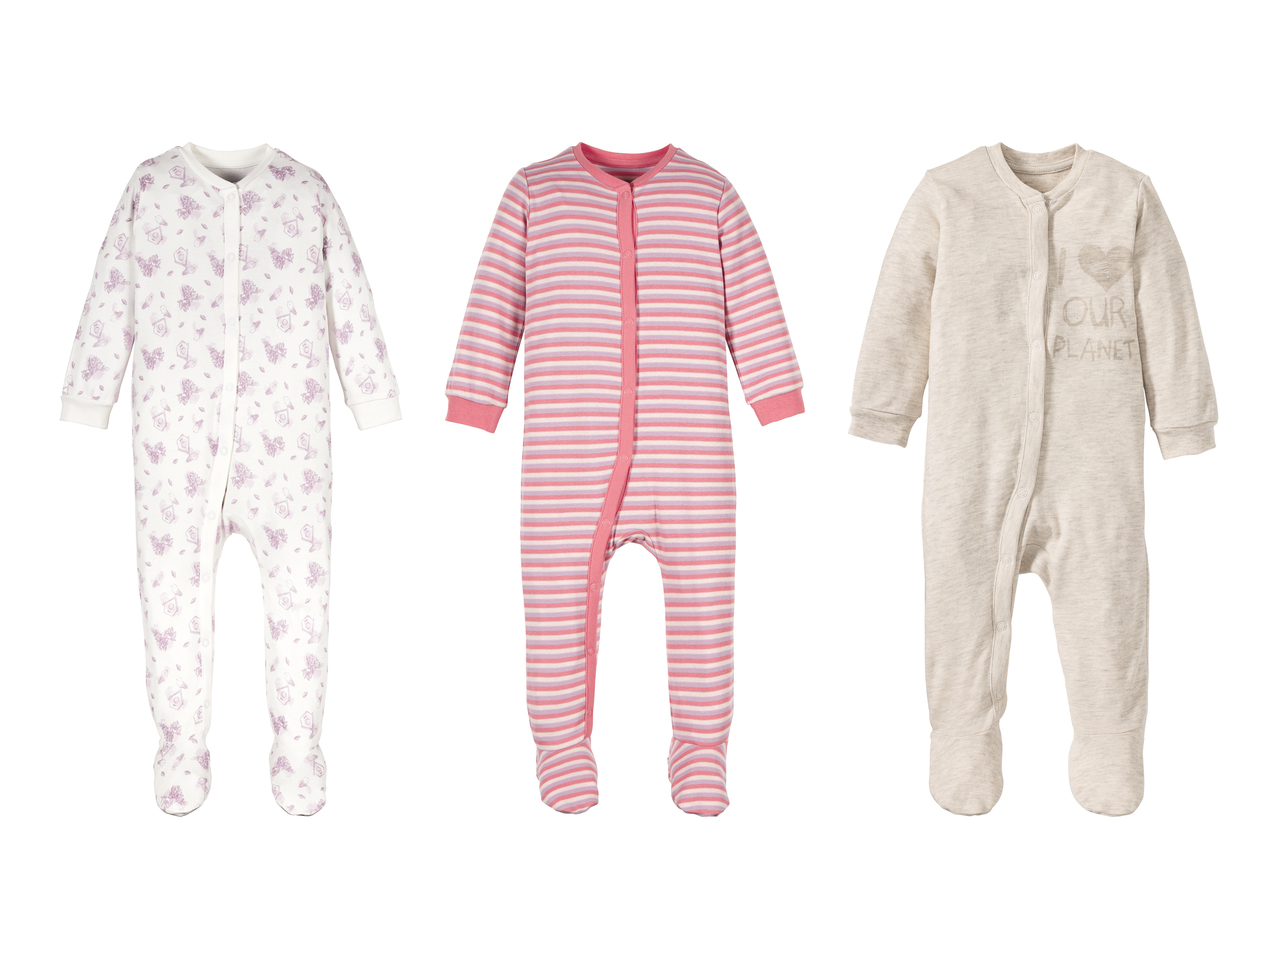 Pyjama combinaison pour bébé (uniquement en Suisse romande)1